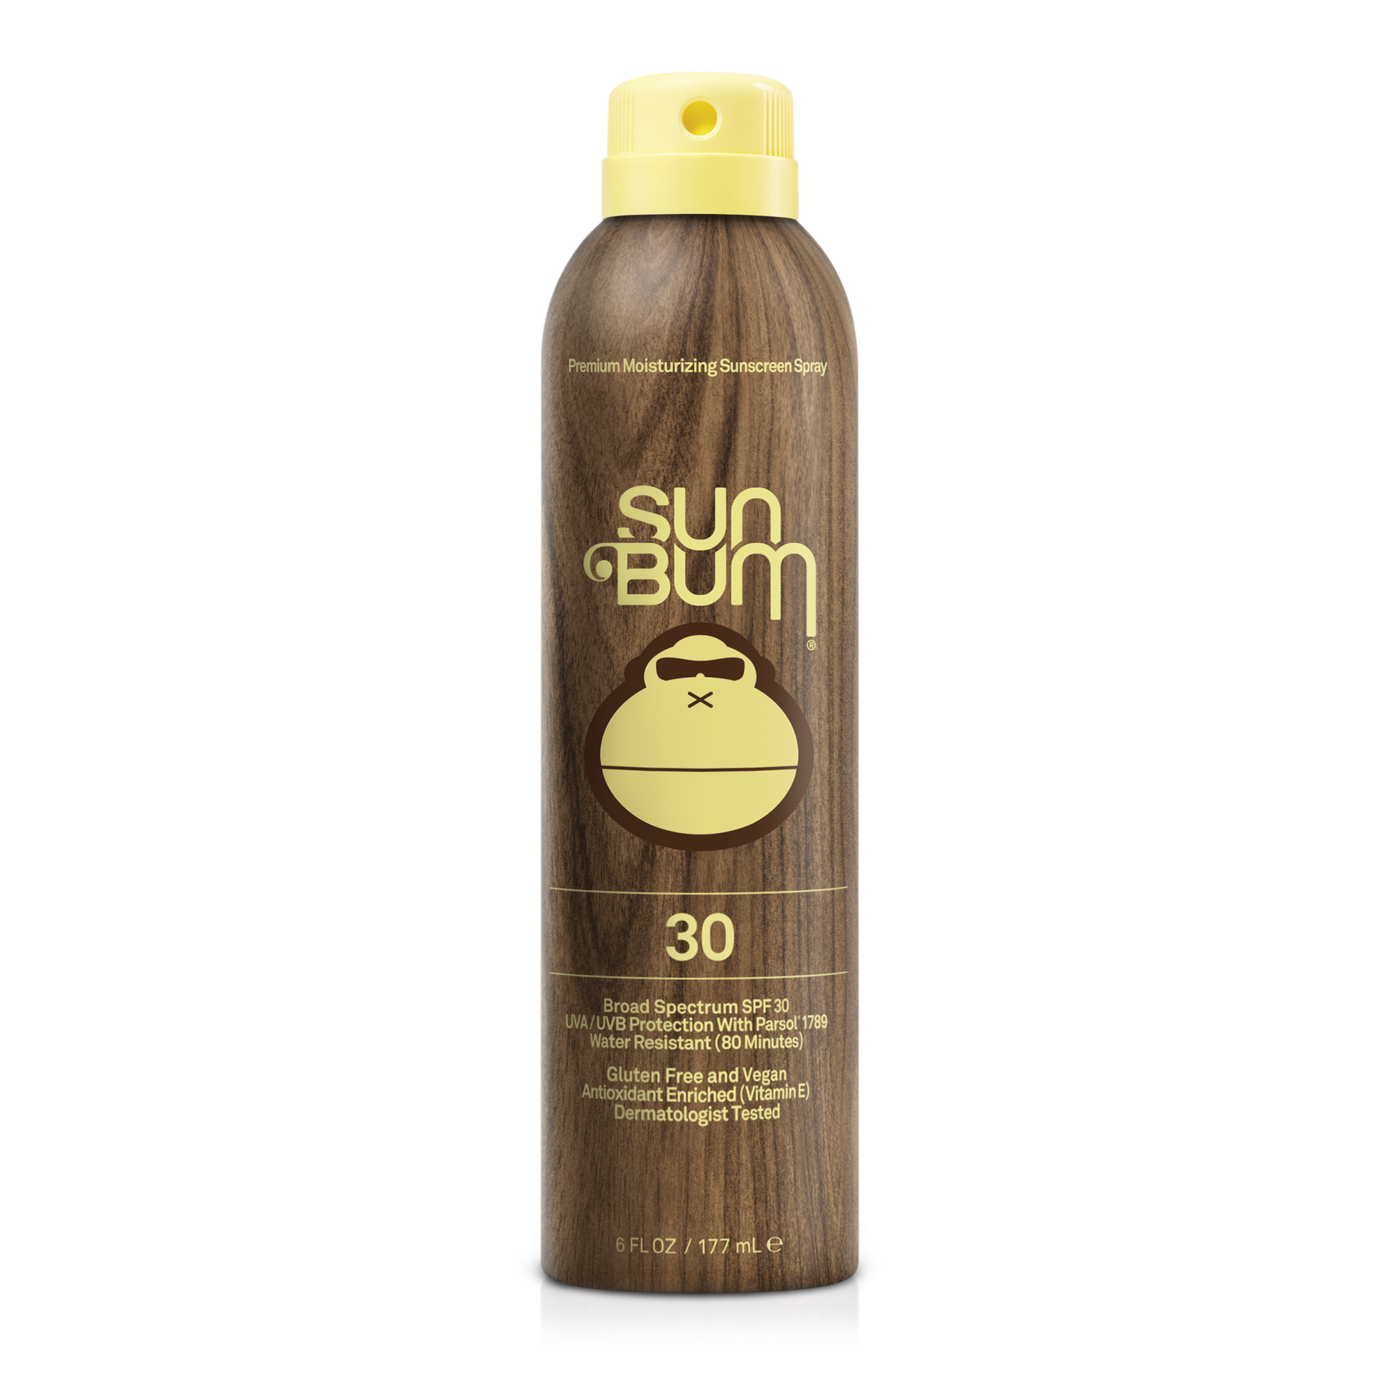 Sun Bum Sunscreen Spray 30 SPF